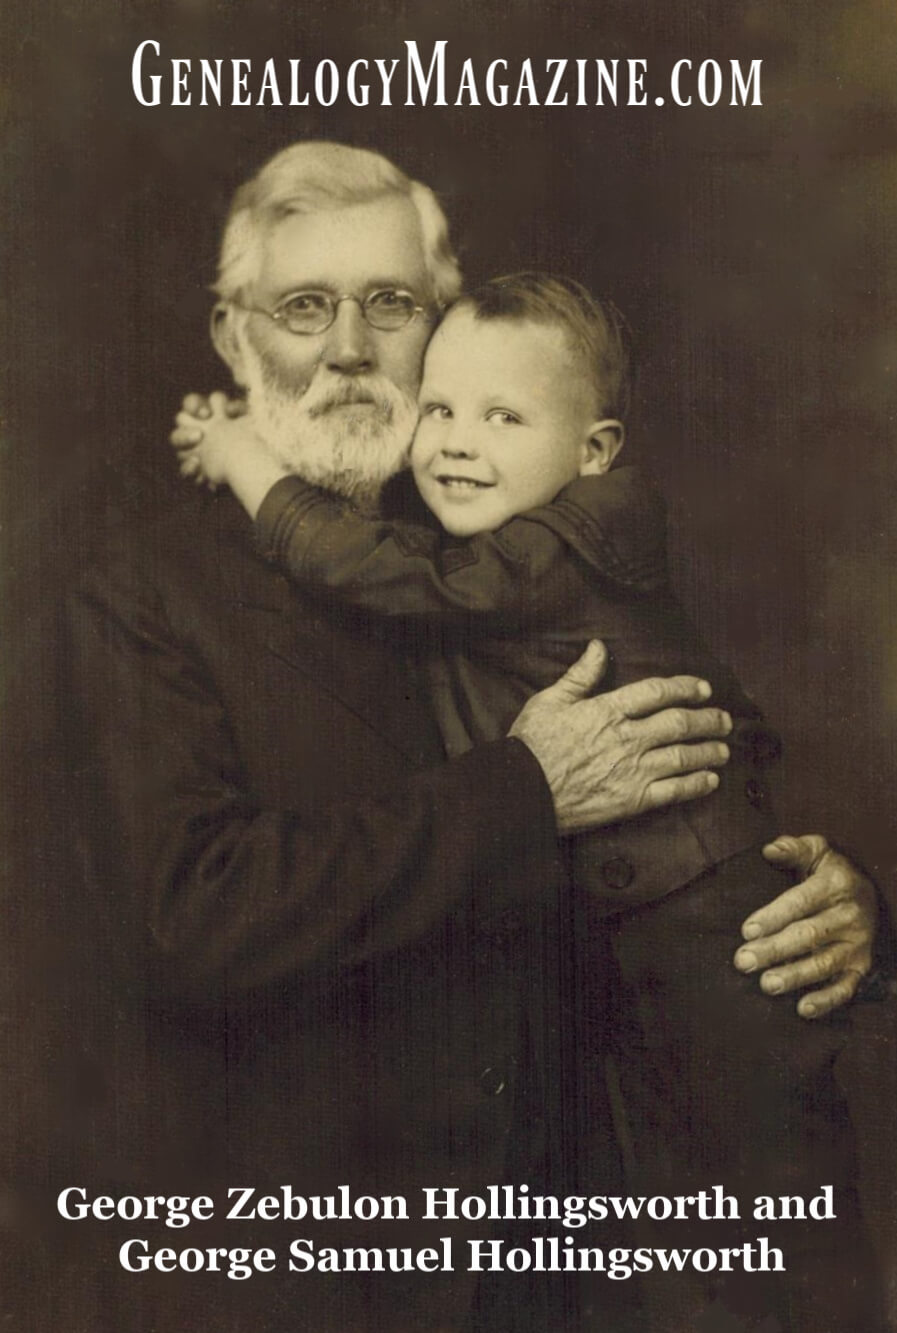 George Zebulon Hollingsworth and grandson